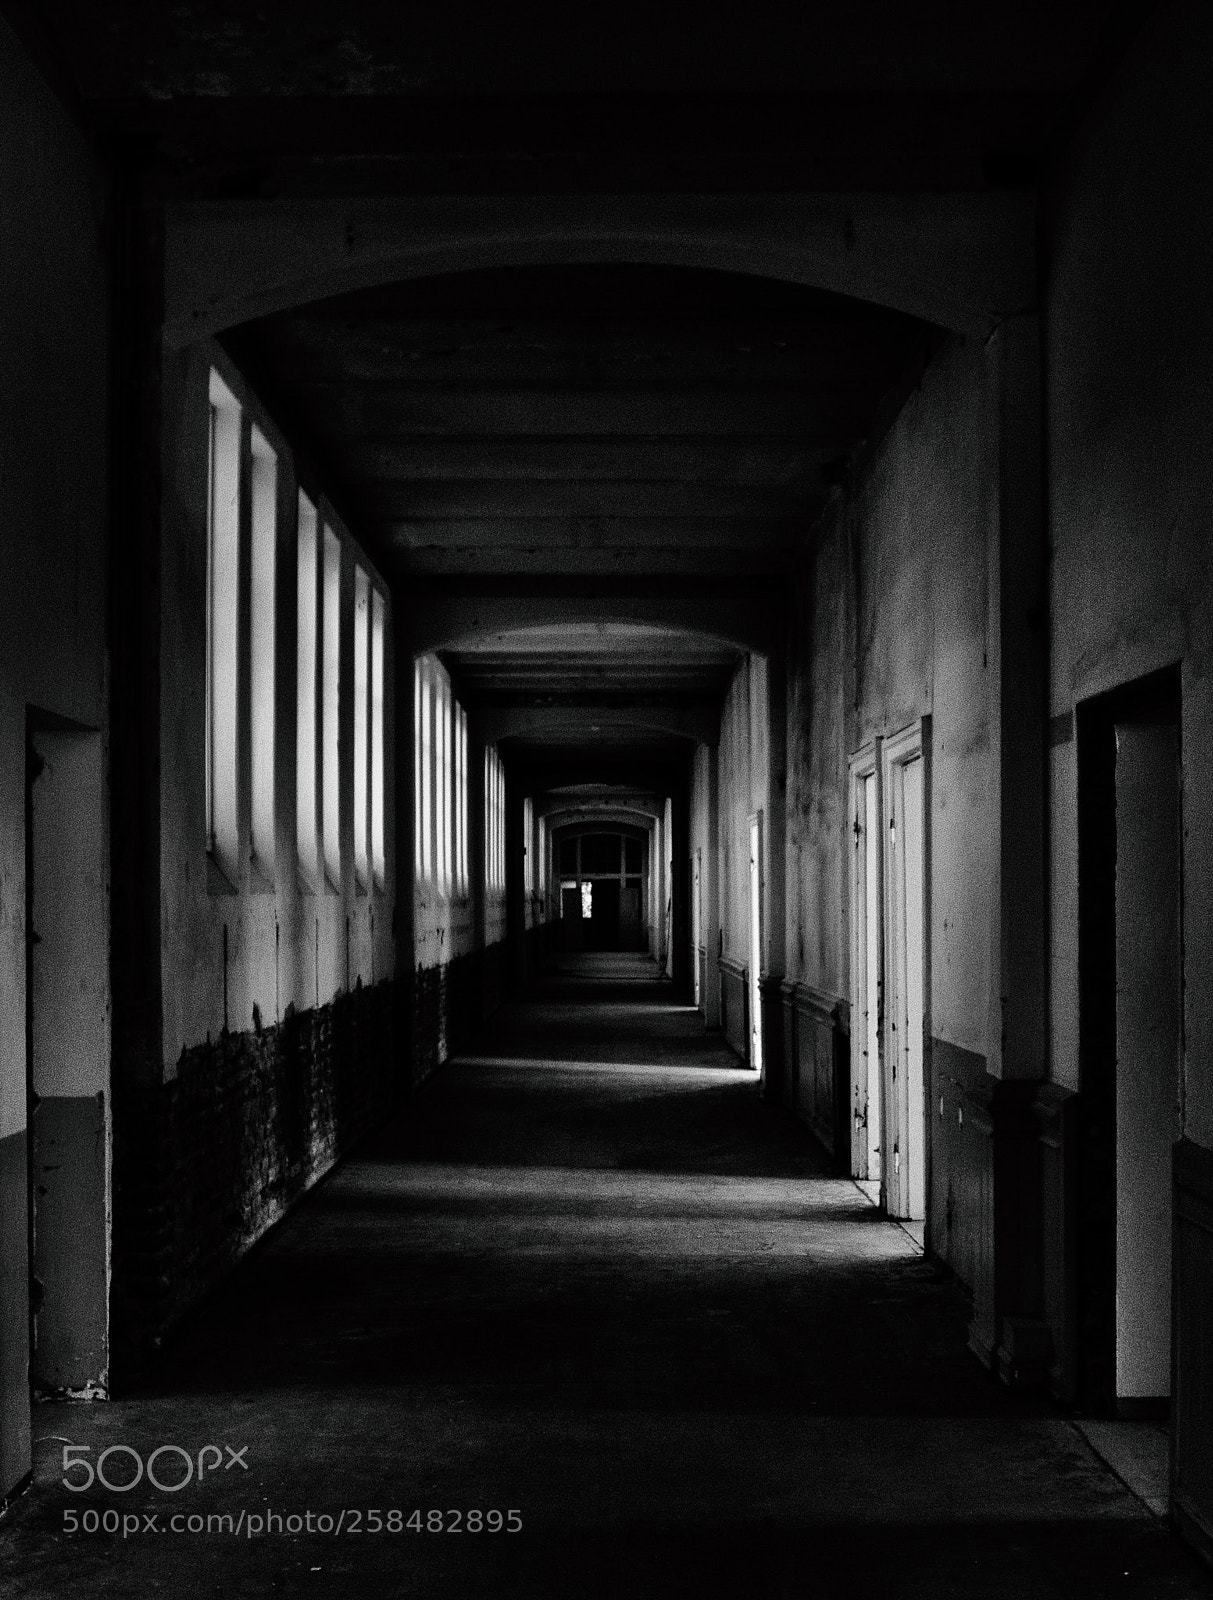 Pentax K-50 sample photo. Abandoned hallways photography